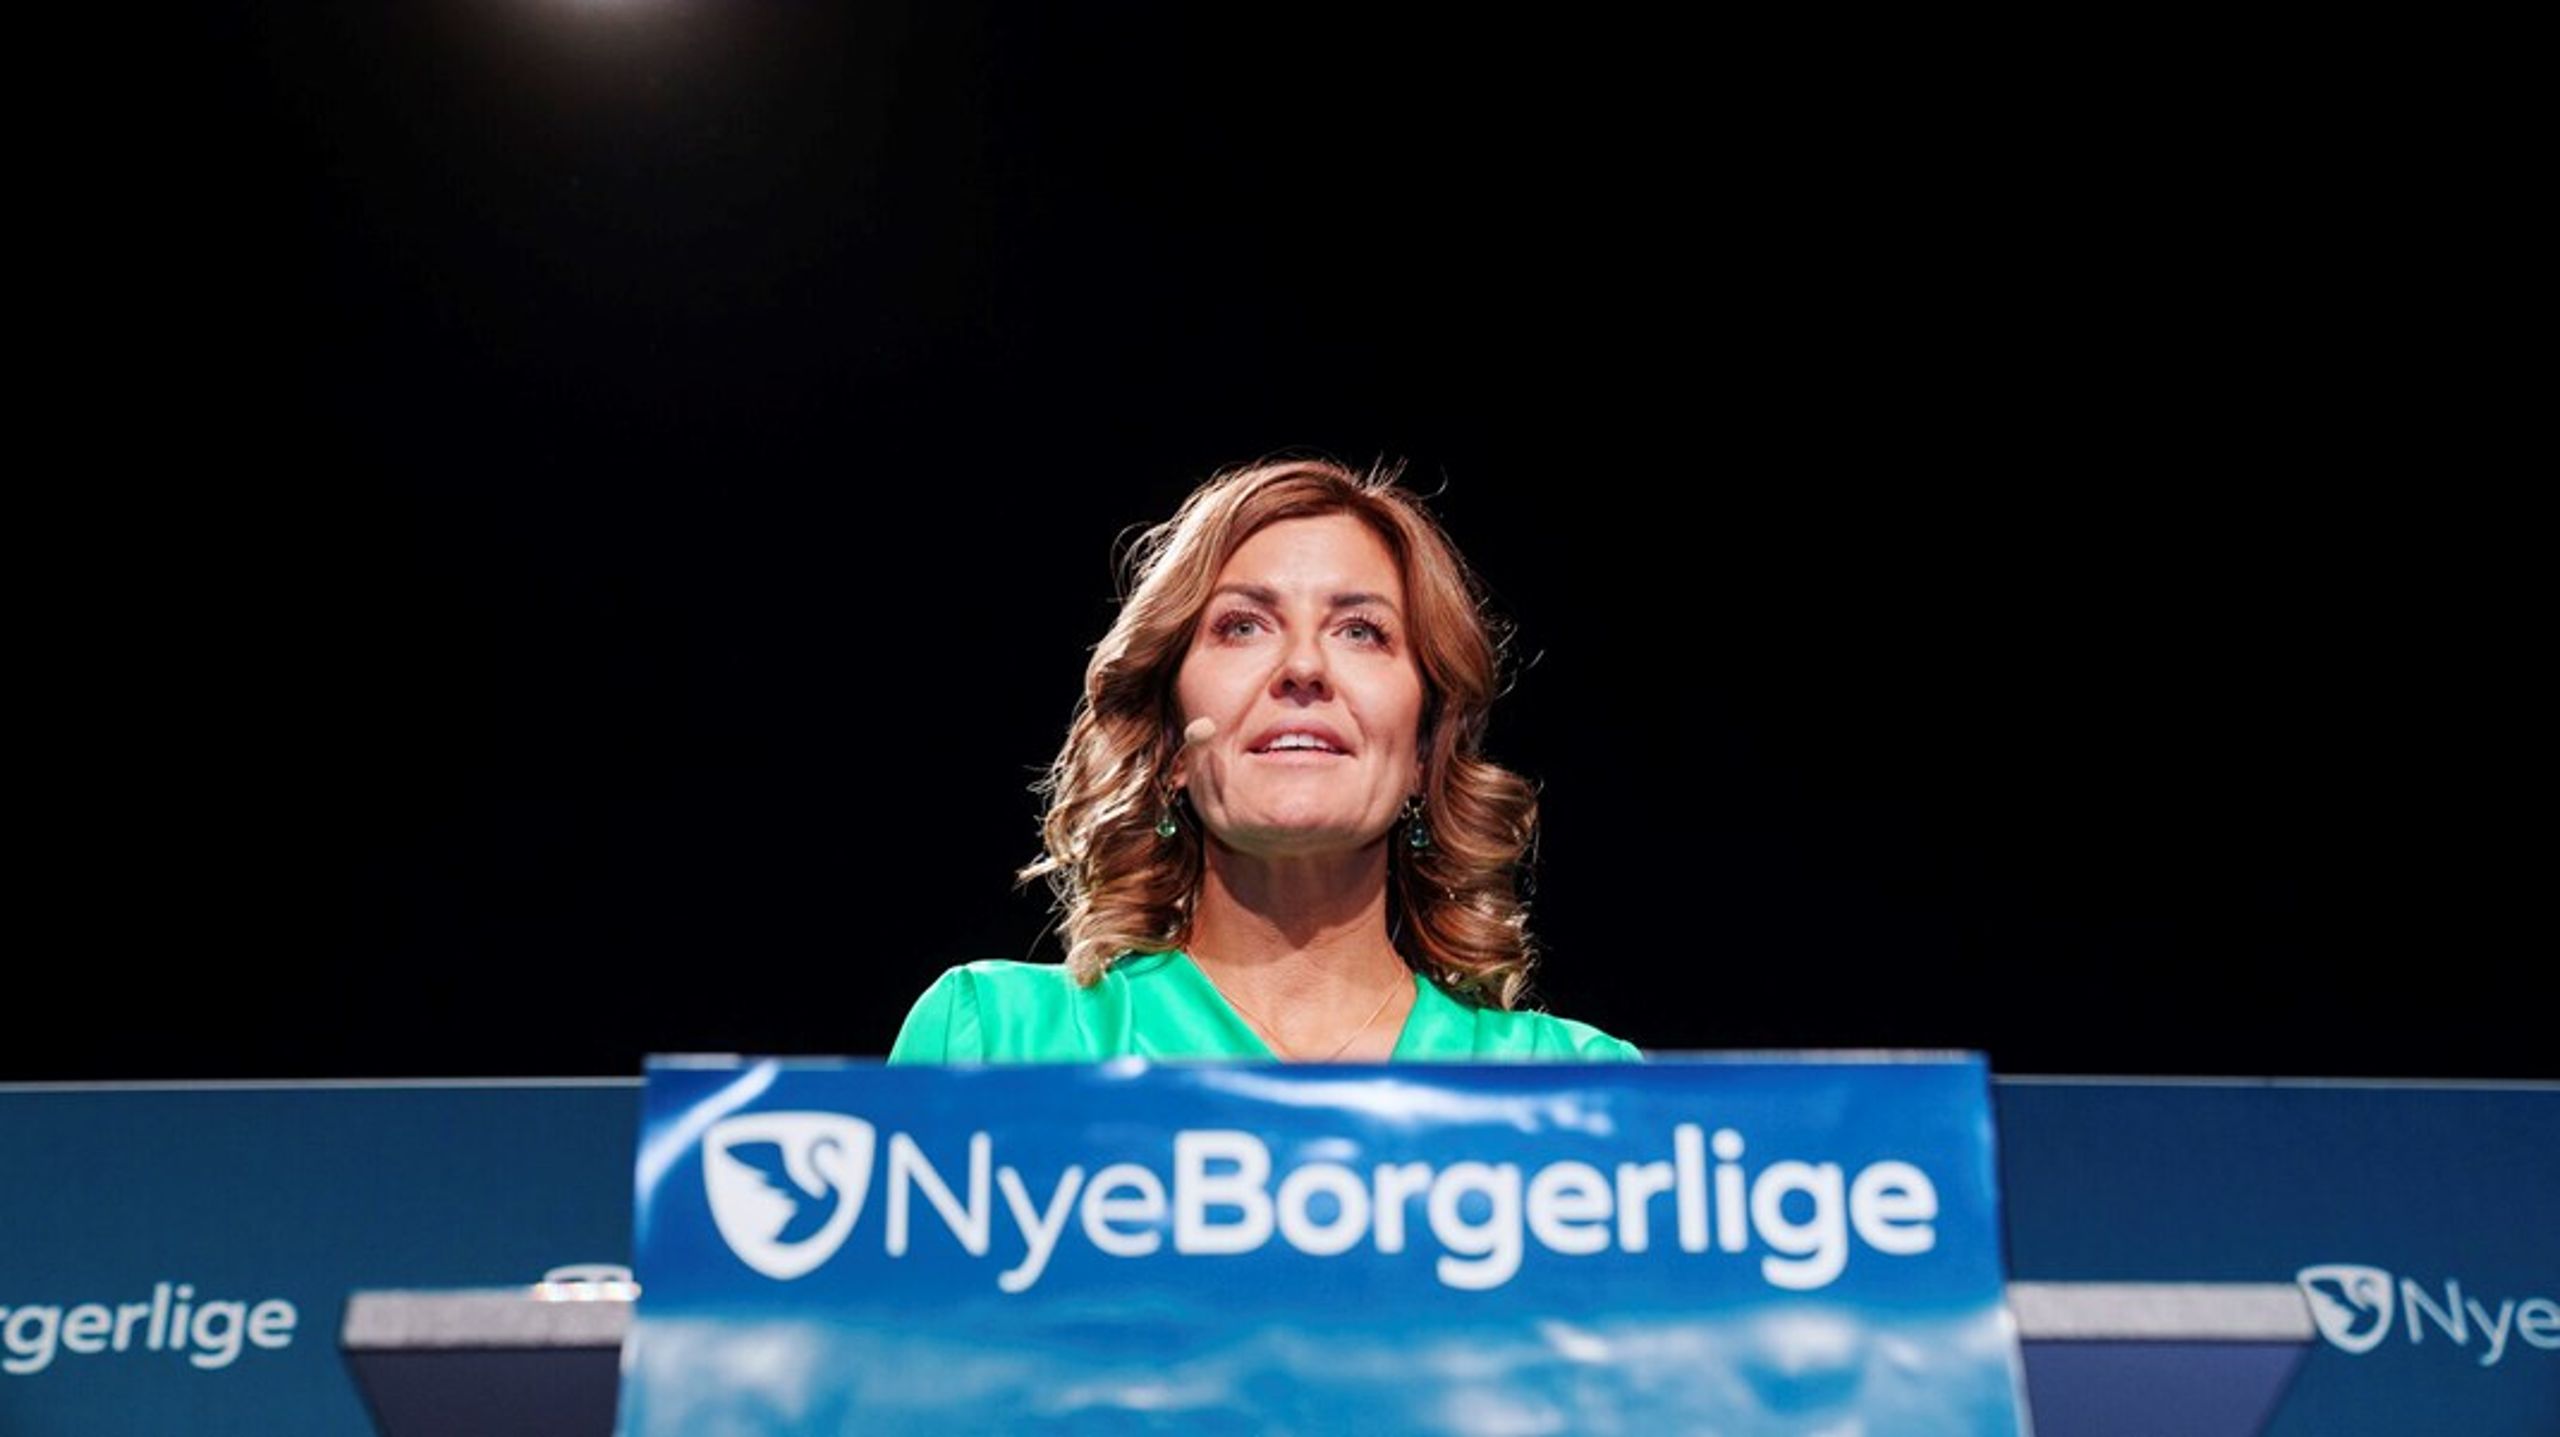 Ifølge Henriette Ergemann&nbsp;vil partiet lægge op ad Nye Borgerlige og Dansk Folkeparti, men hun mener samtidig, at der er plads til endnu et parti på højrefløjen.